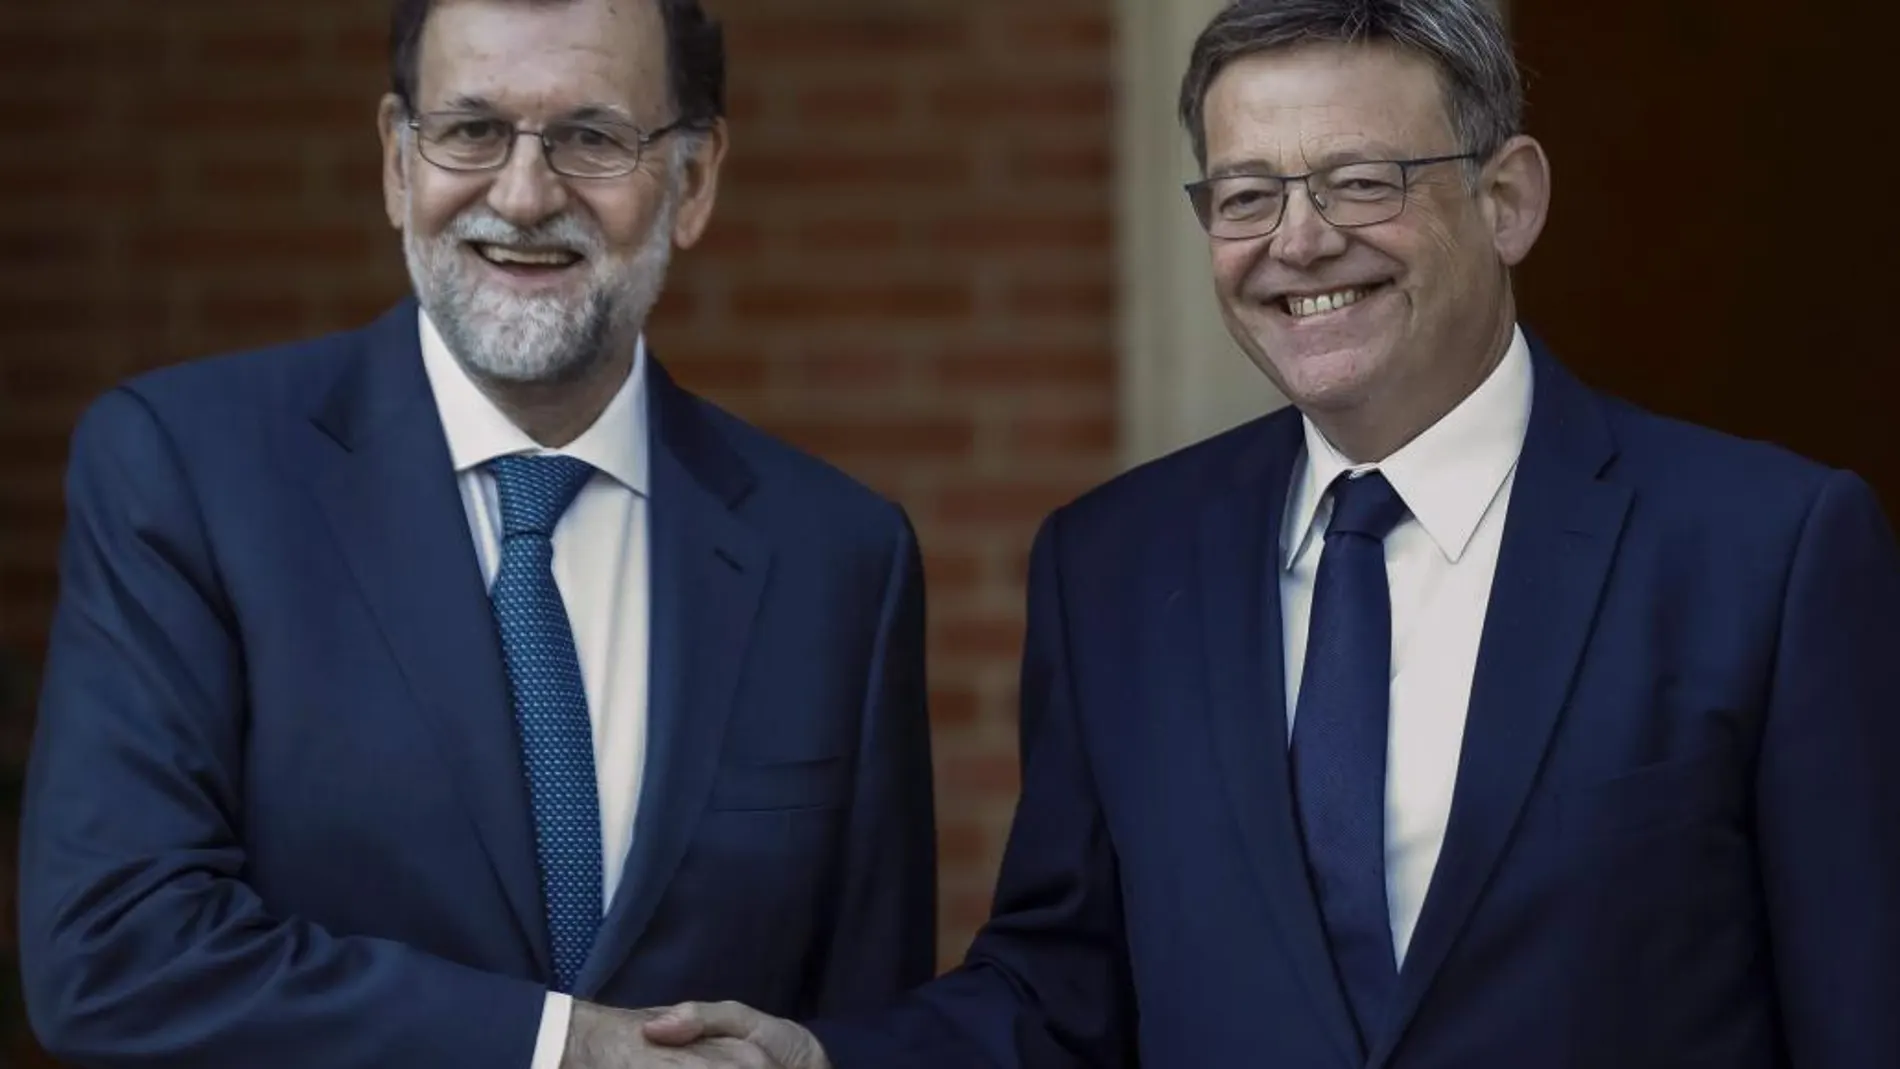 El presidente Puig entregó a Mariano Rajoy un decálogo de propuestas sobre la financiación autonómica